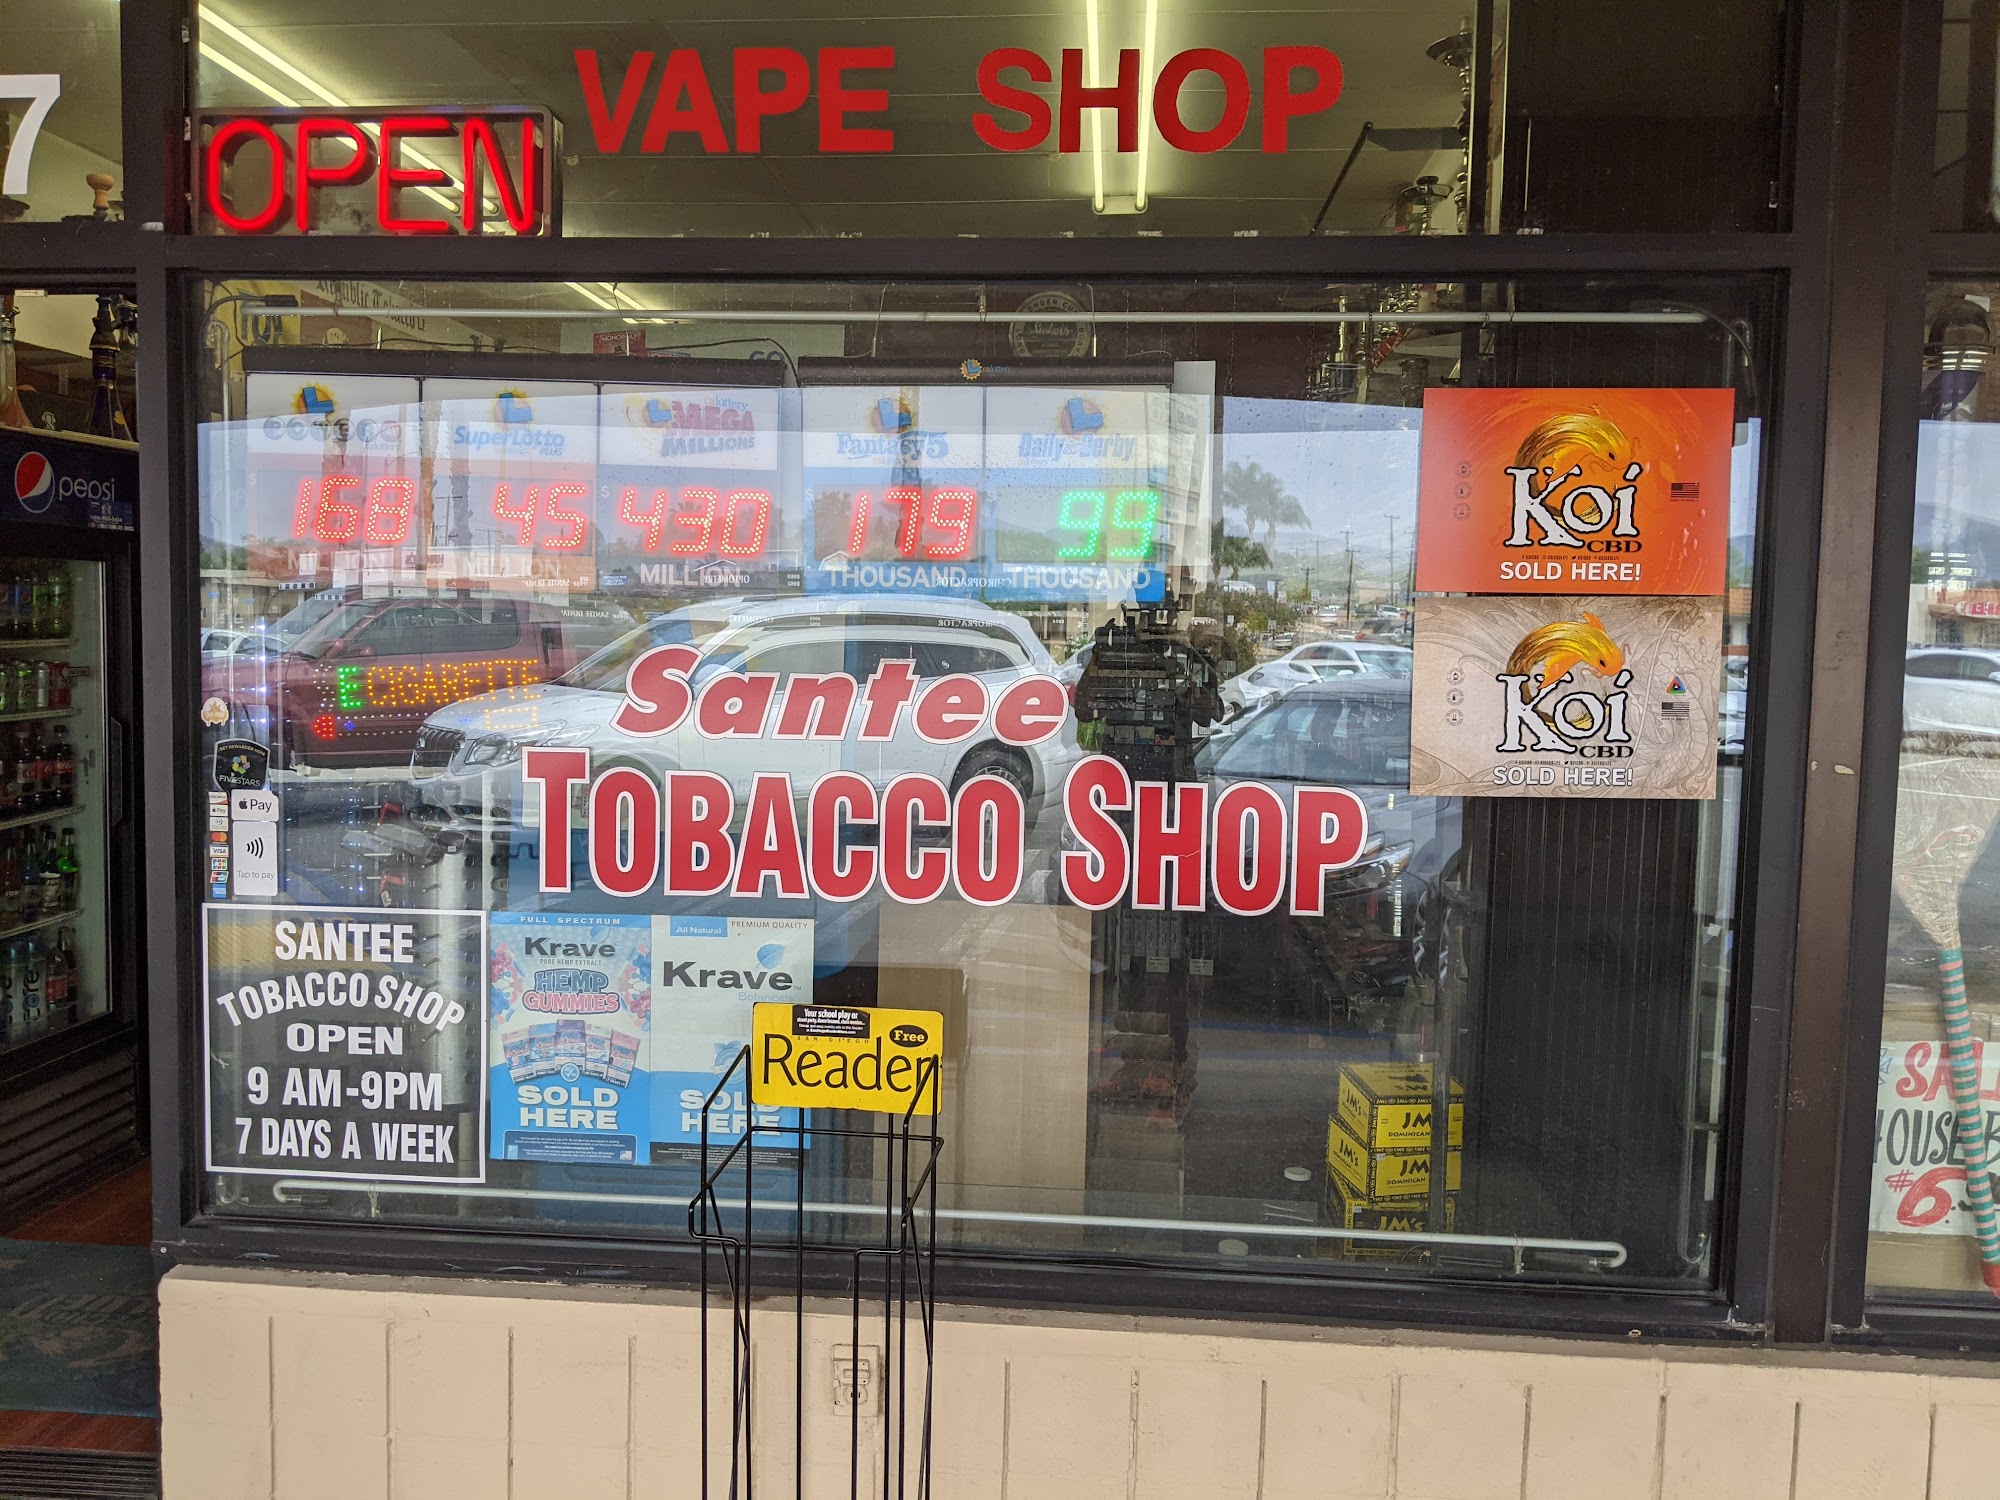 Santee Tobacco Shop